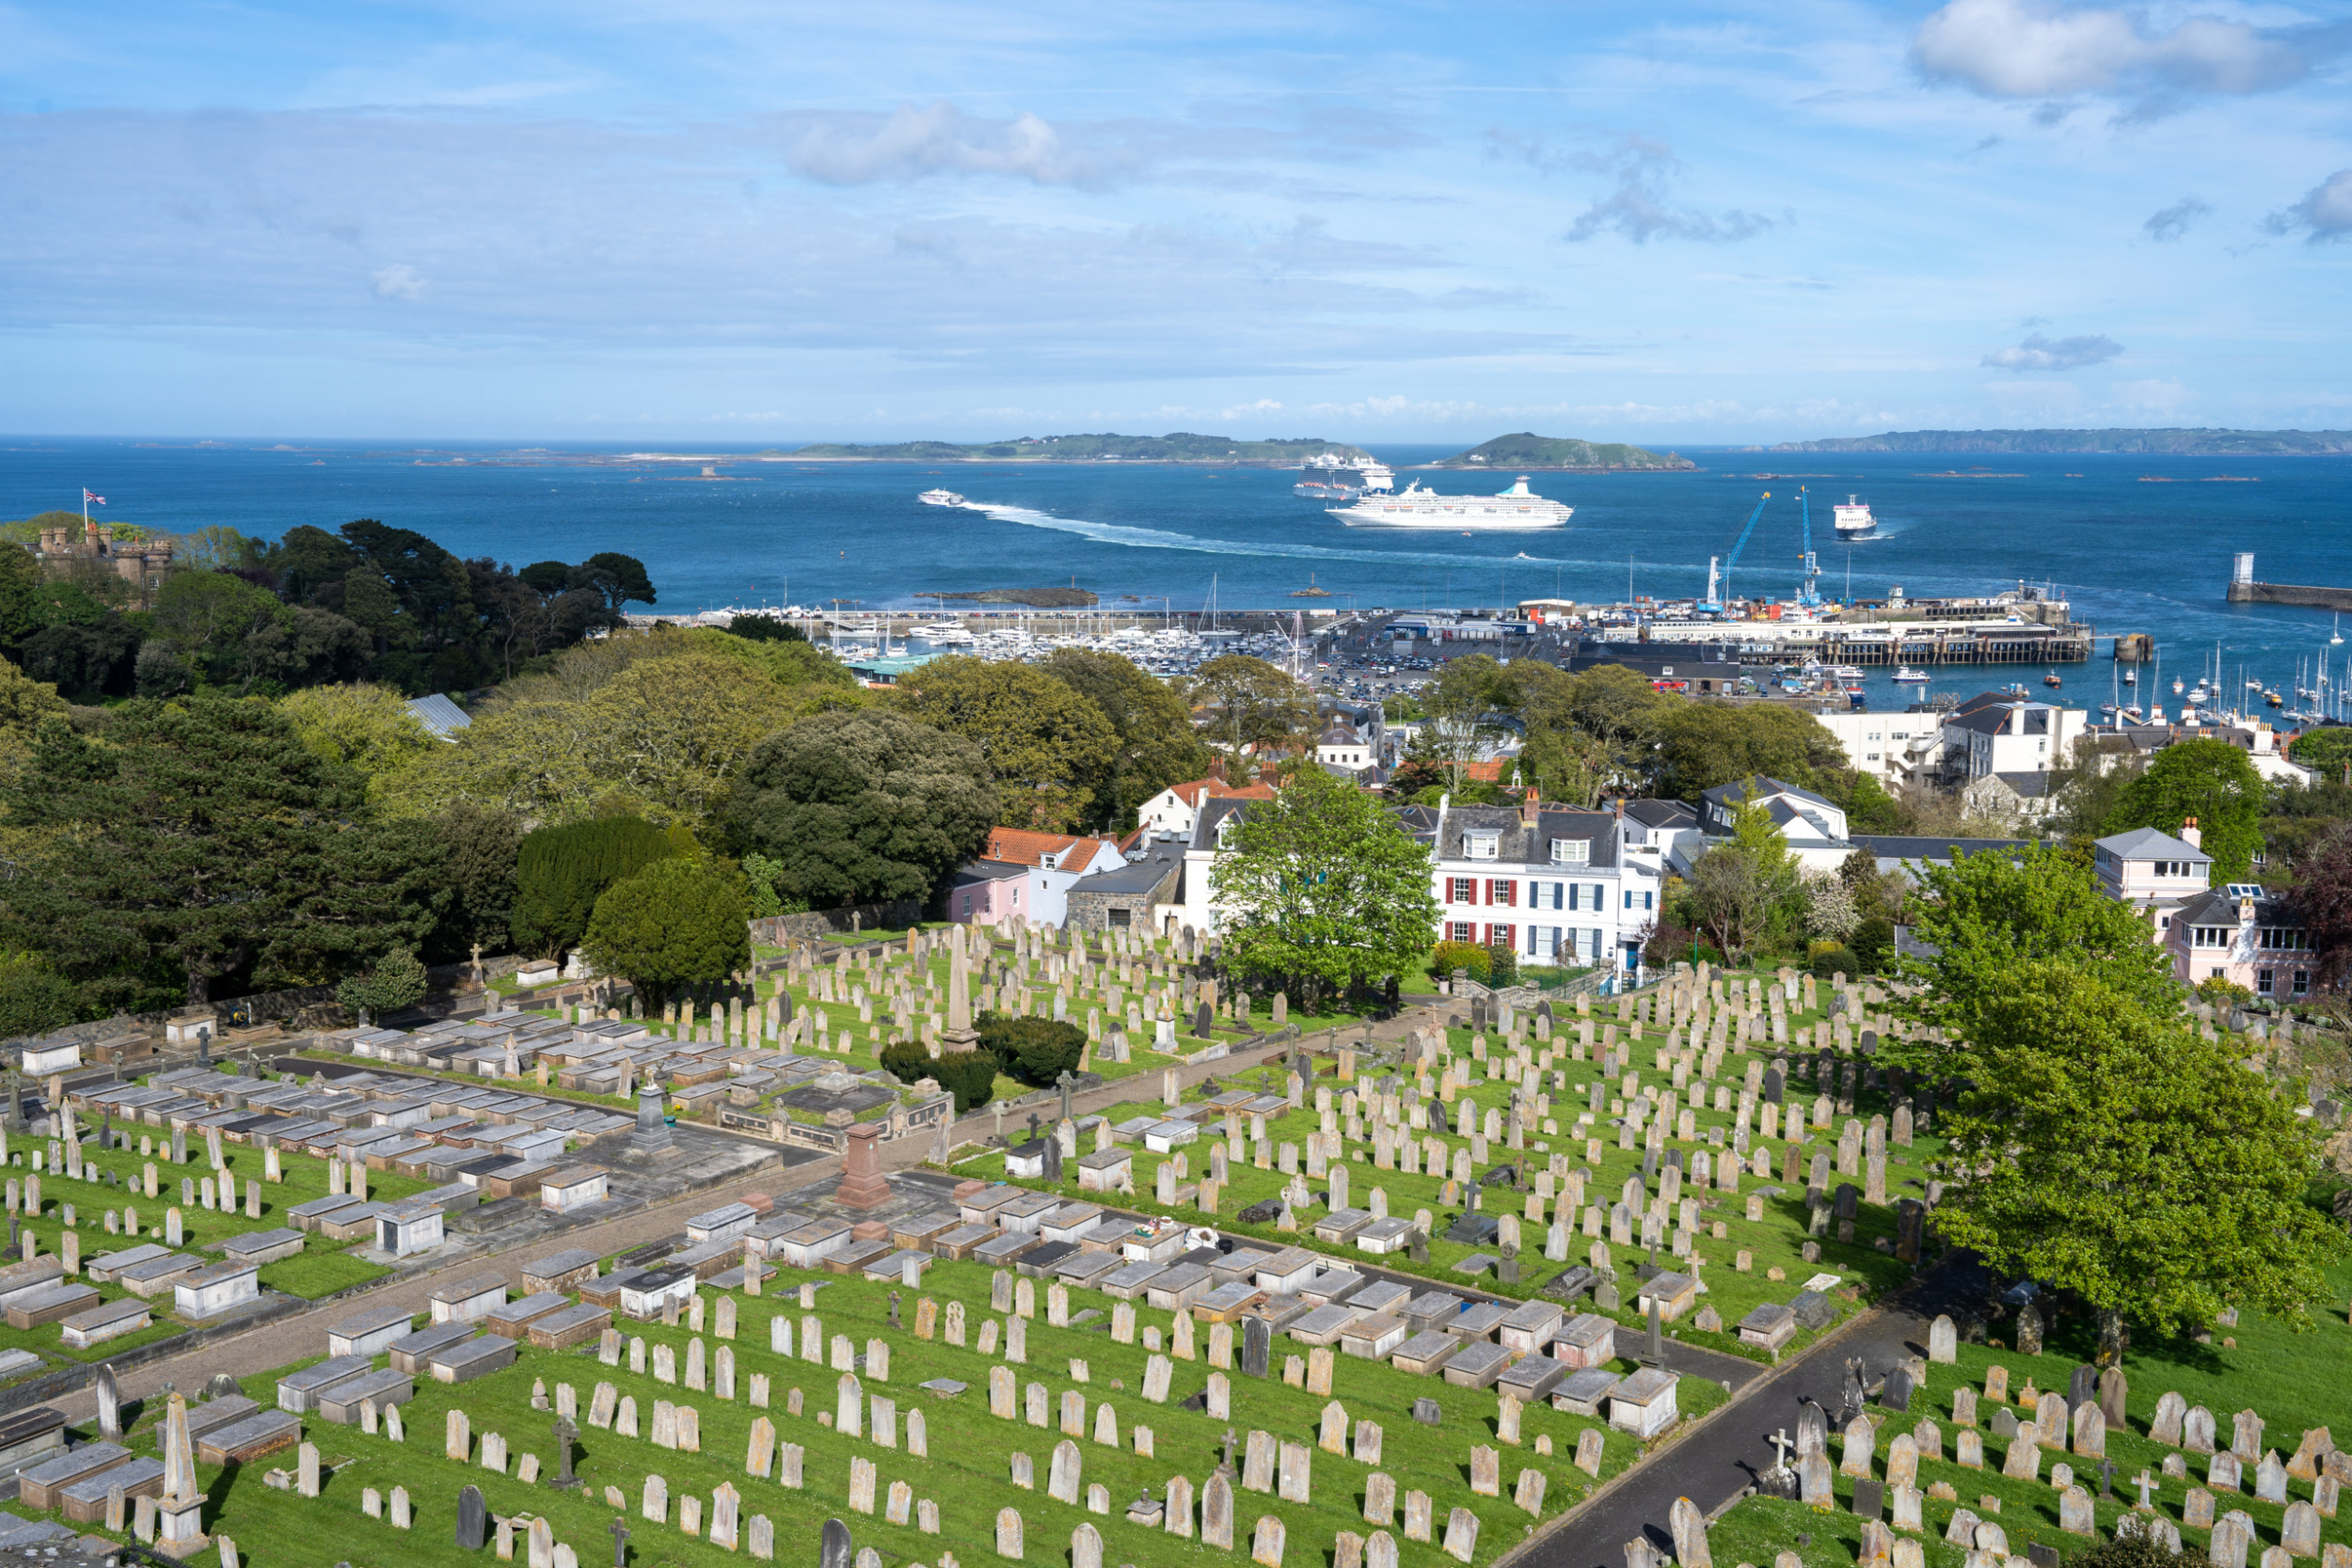 Ausblick auf den riesigen Friedhof vom Victoria Tower aus